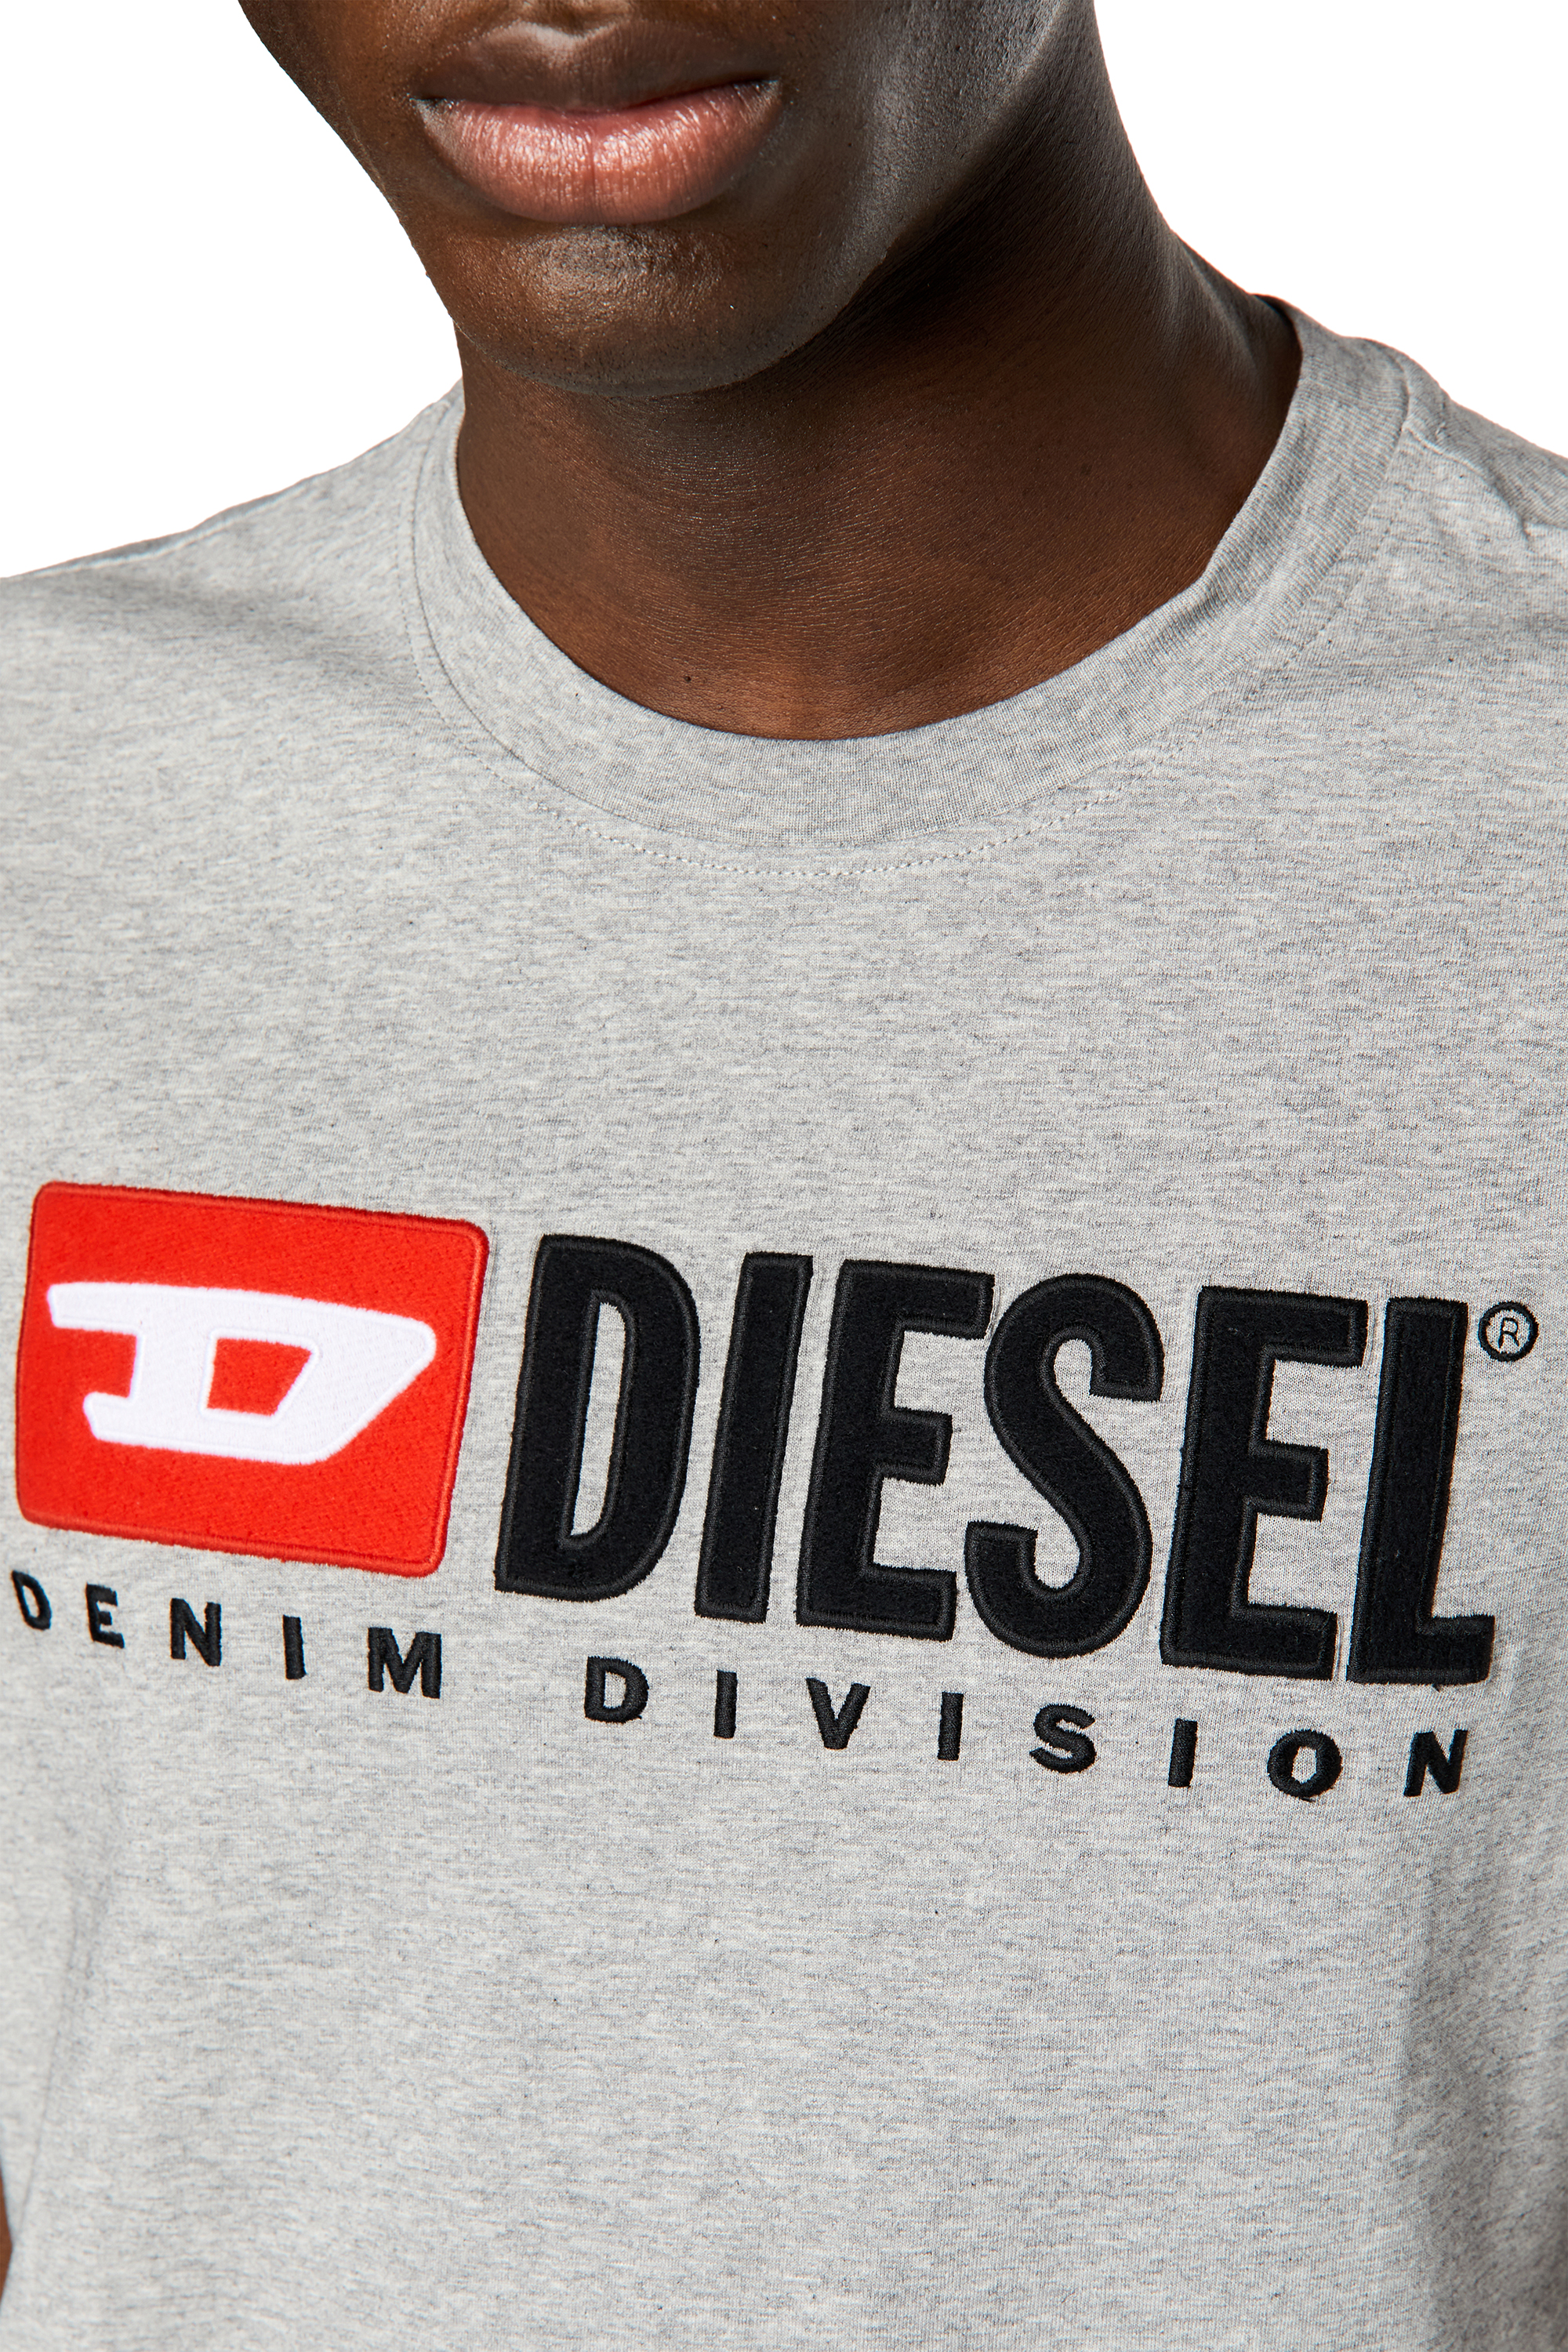 Diesel - T-DIEGOR-DIV, Grey - Image 4